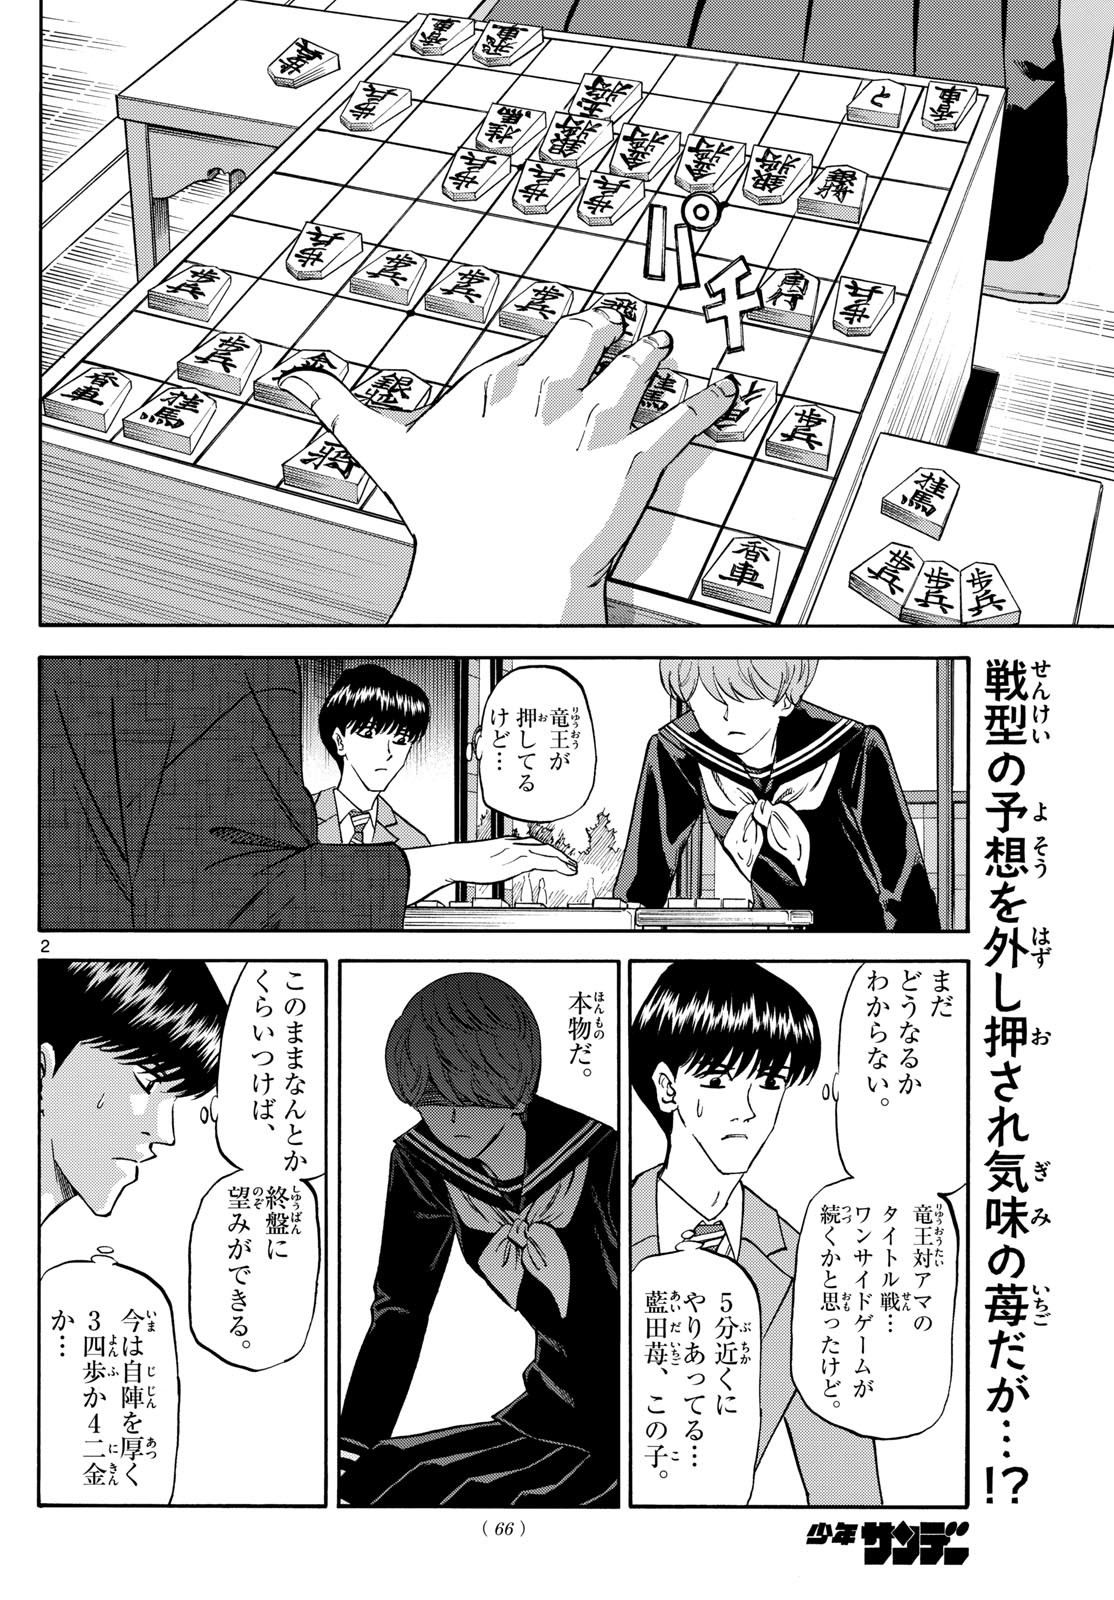 Ryu-to-Ichigo - Chapter 157 - Page 2